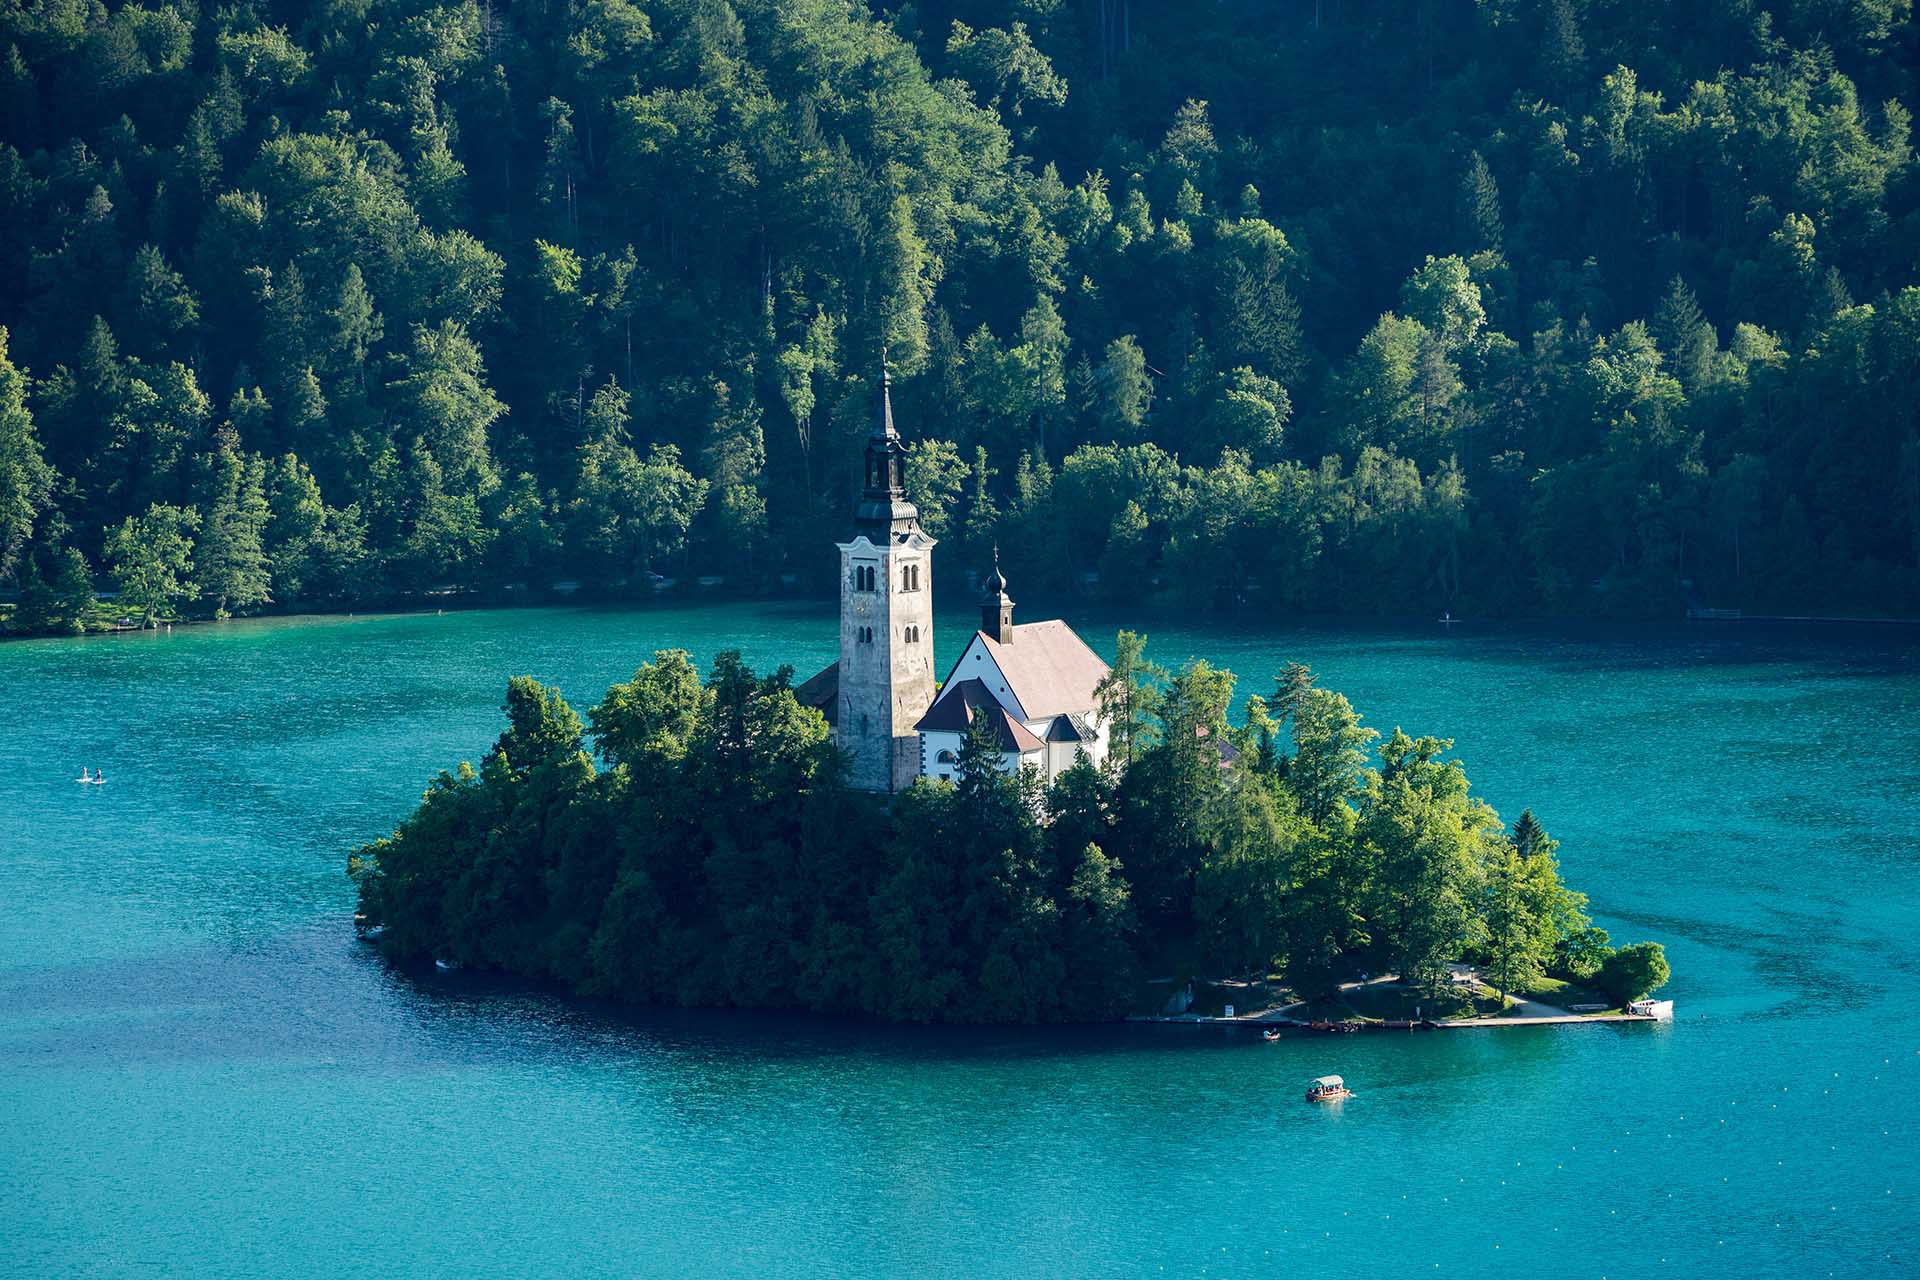 Prachtige vakantie Slovenië: mijn eerste indrukken